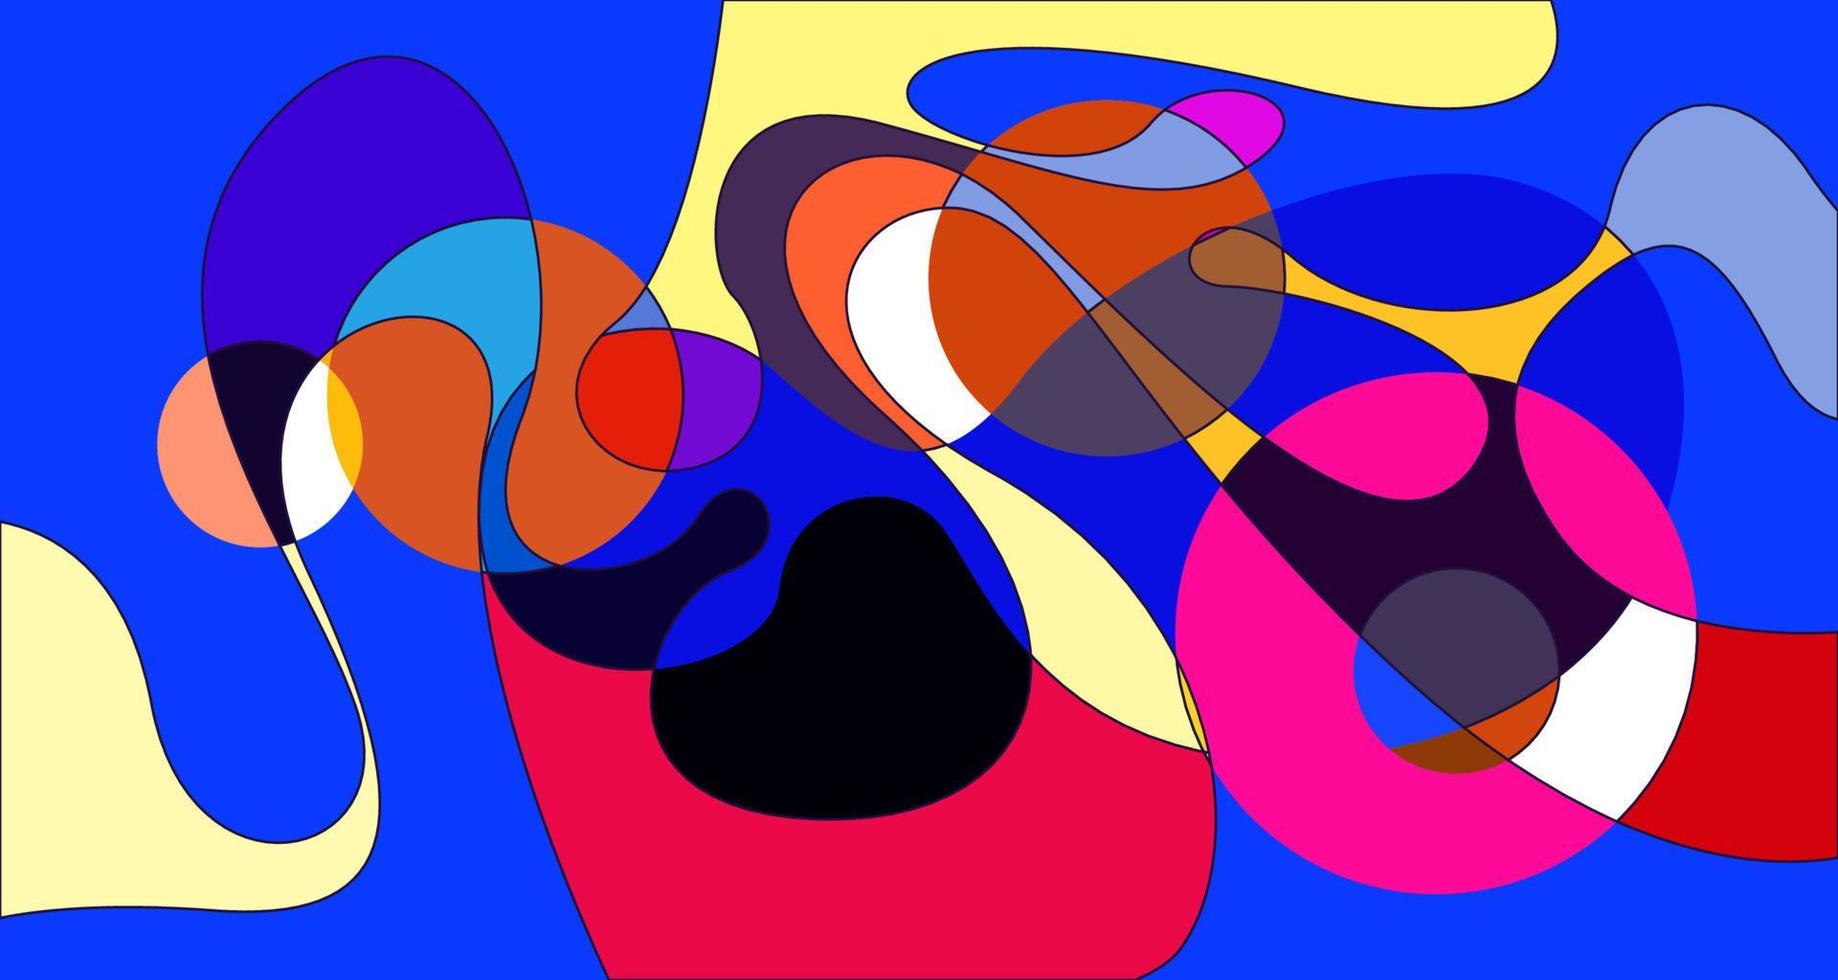 Vector colorido abstracto psicodélico líquido y patrón de fondo fluido